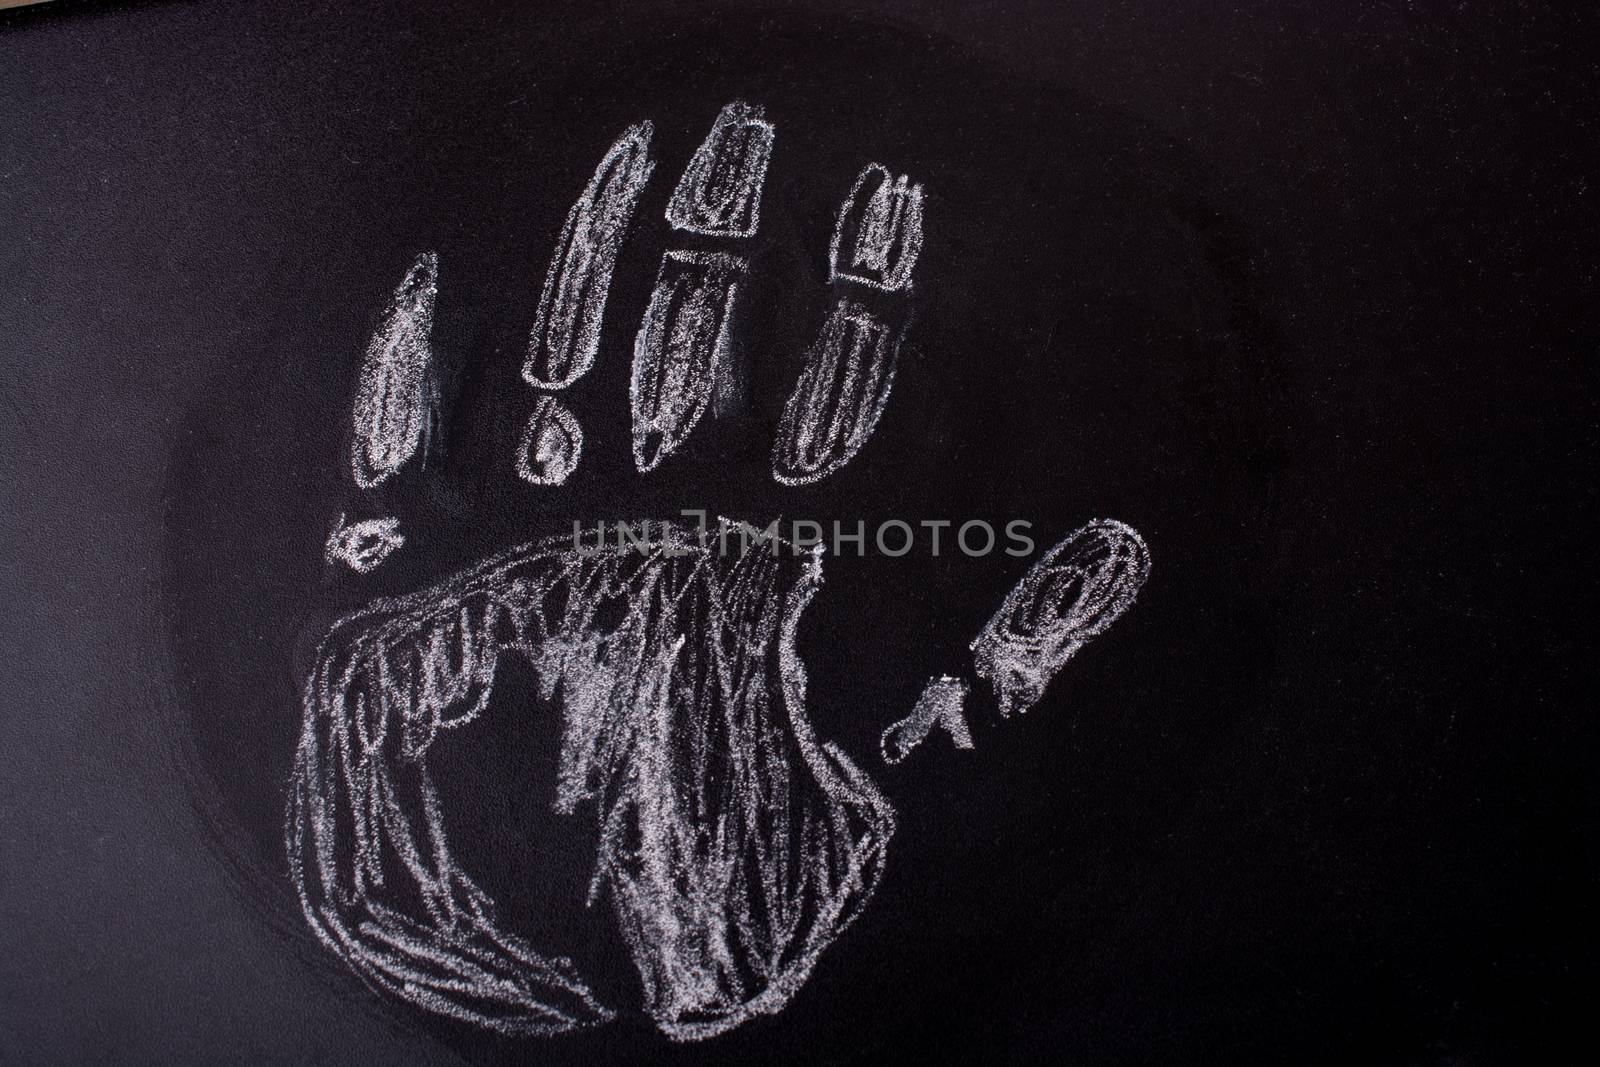 Handprint drawn by chalk on a blackboard by berkay